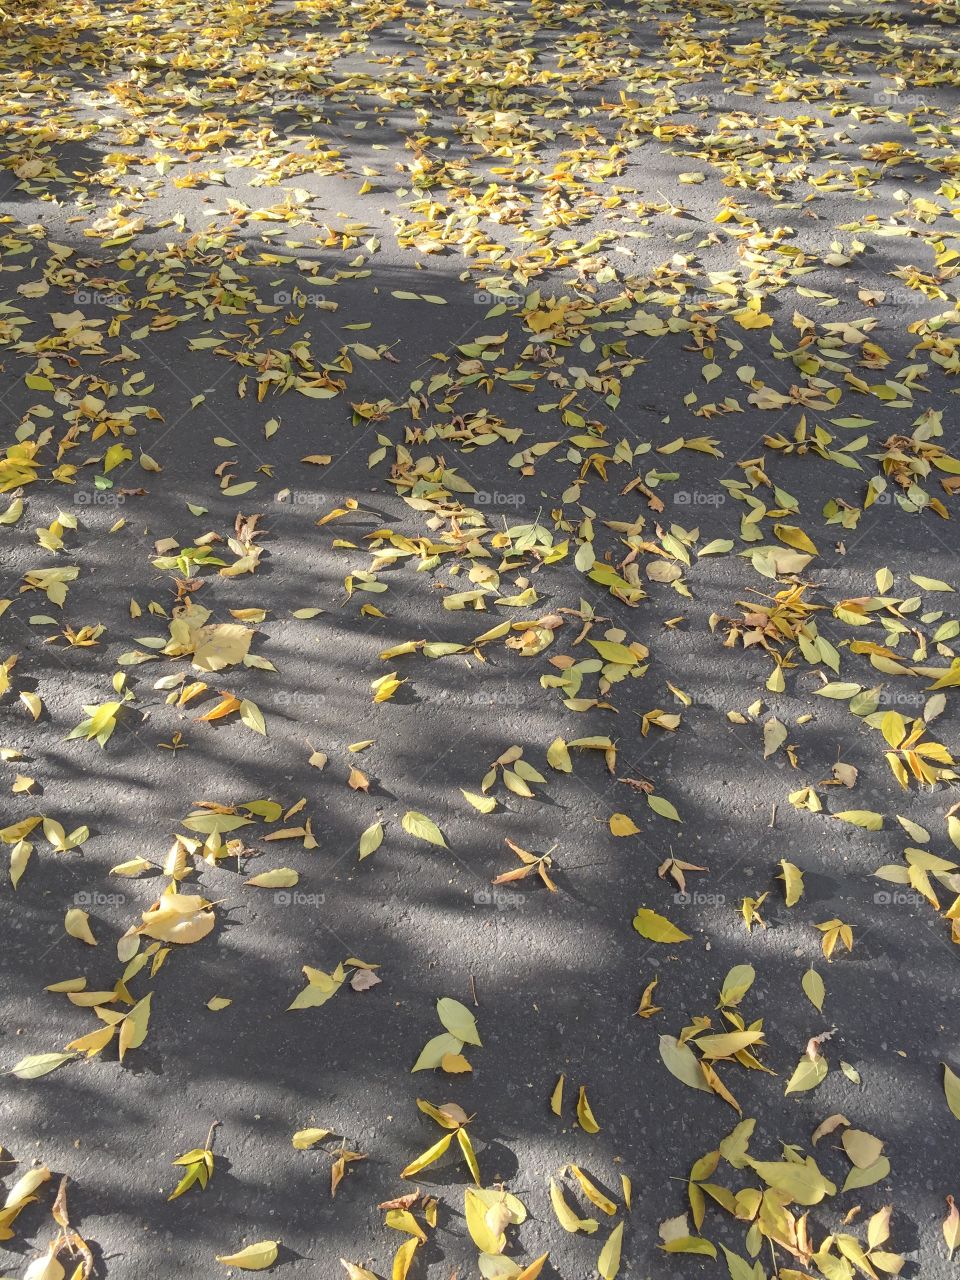 Autumn beauty underfoot.